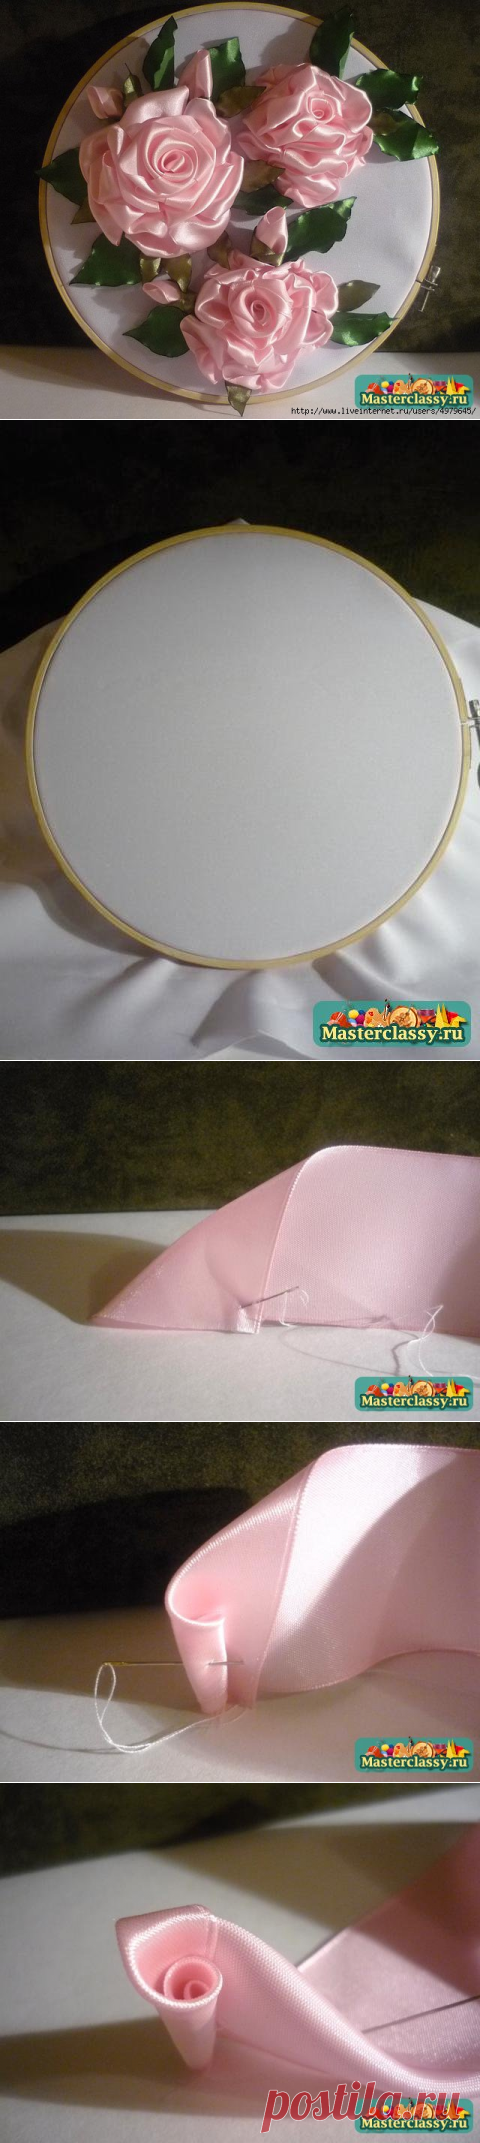 МК вышивки лентами - "Розовое настроение". Очень подробно и доходчиво